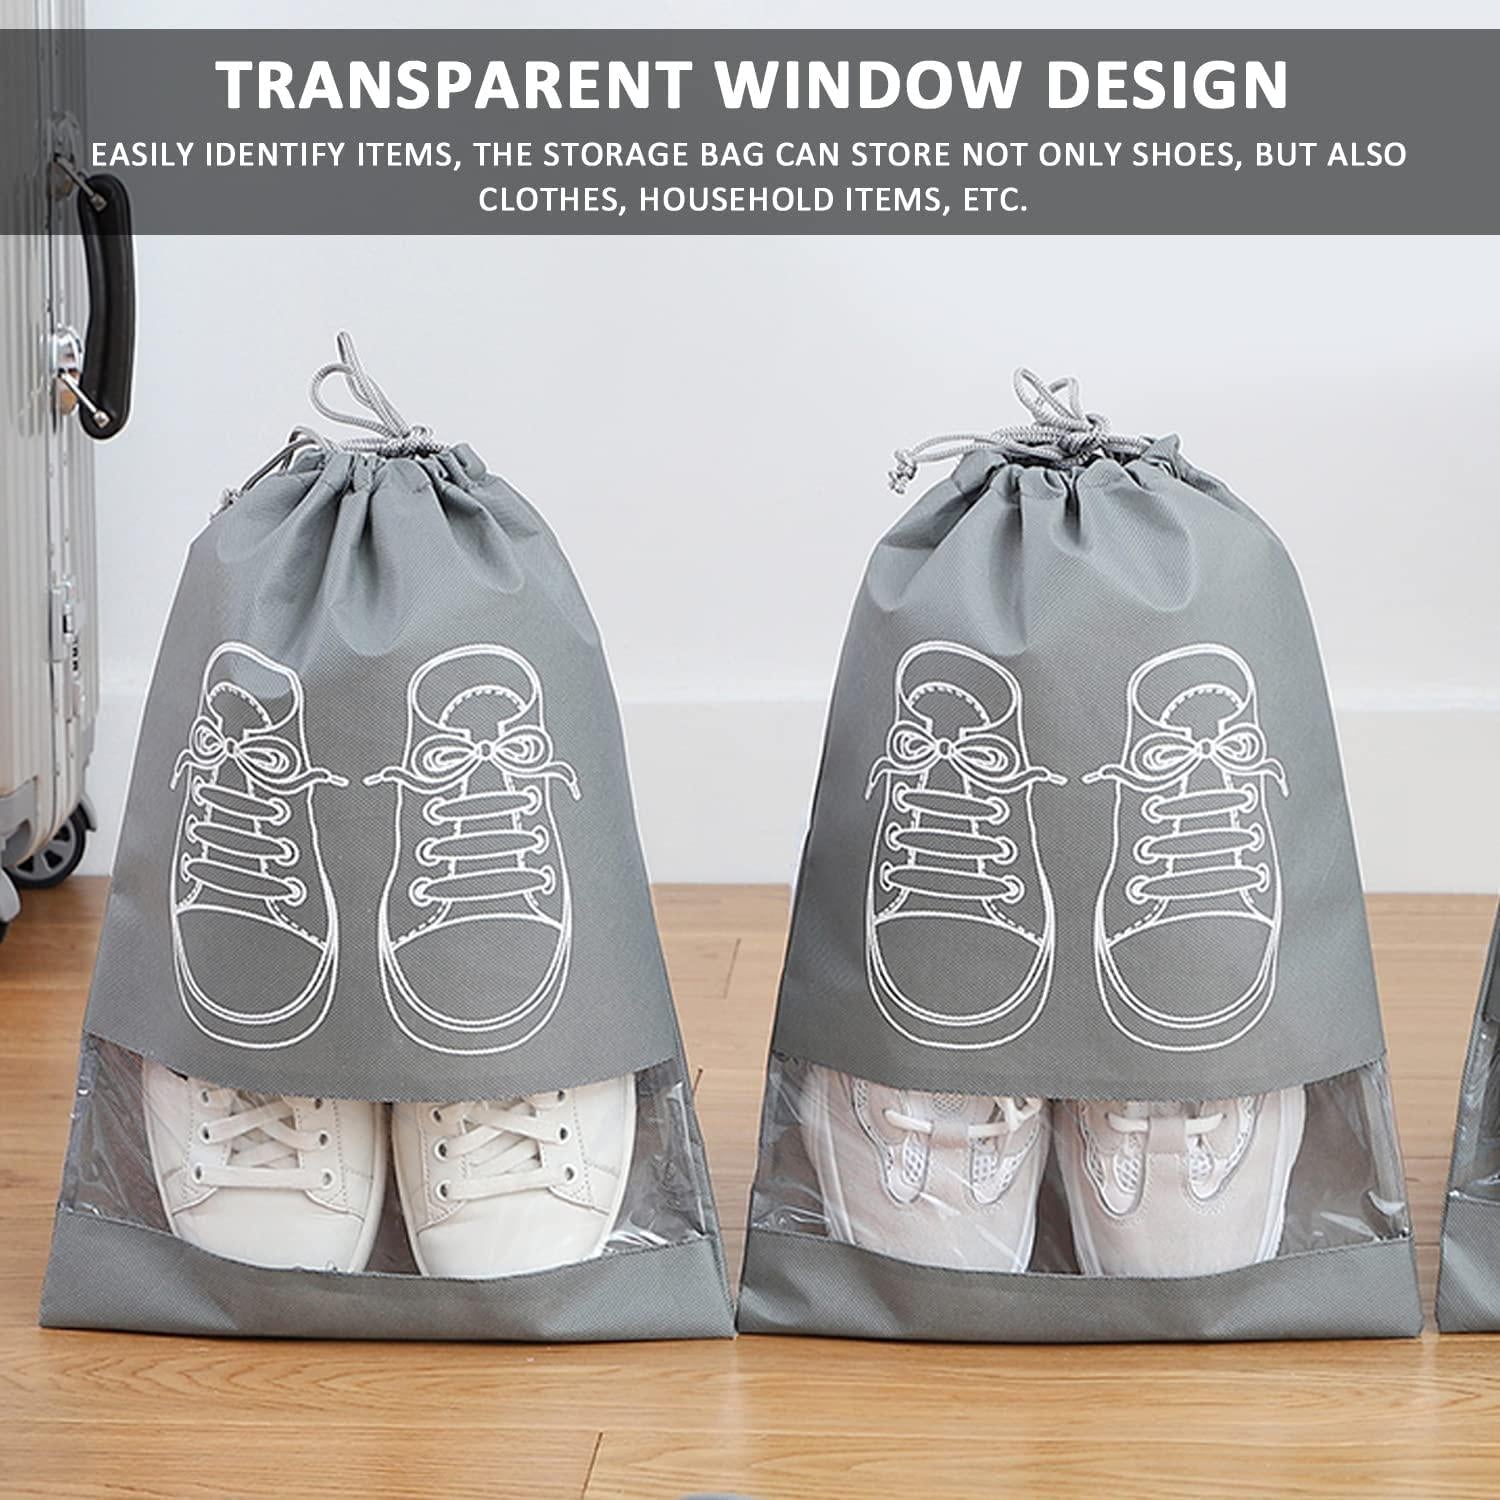 Shoe Bag - Transparent Window Portable Travel Dust-Proof Shoe Bags